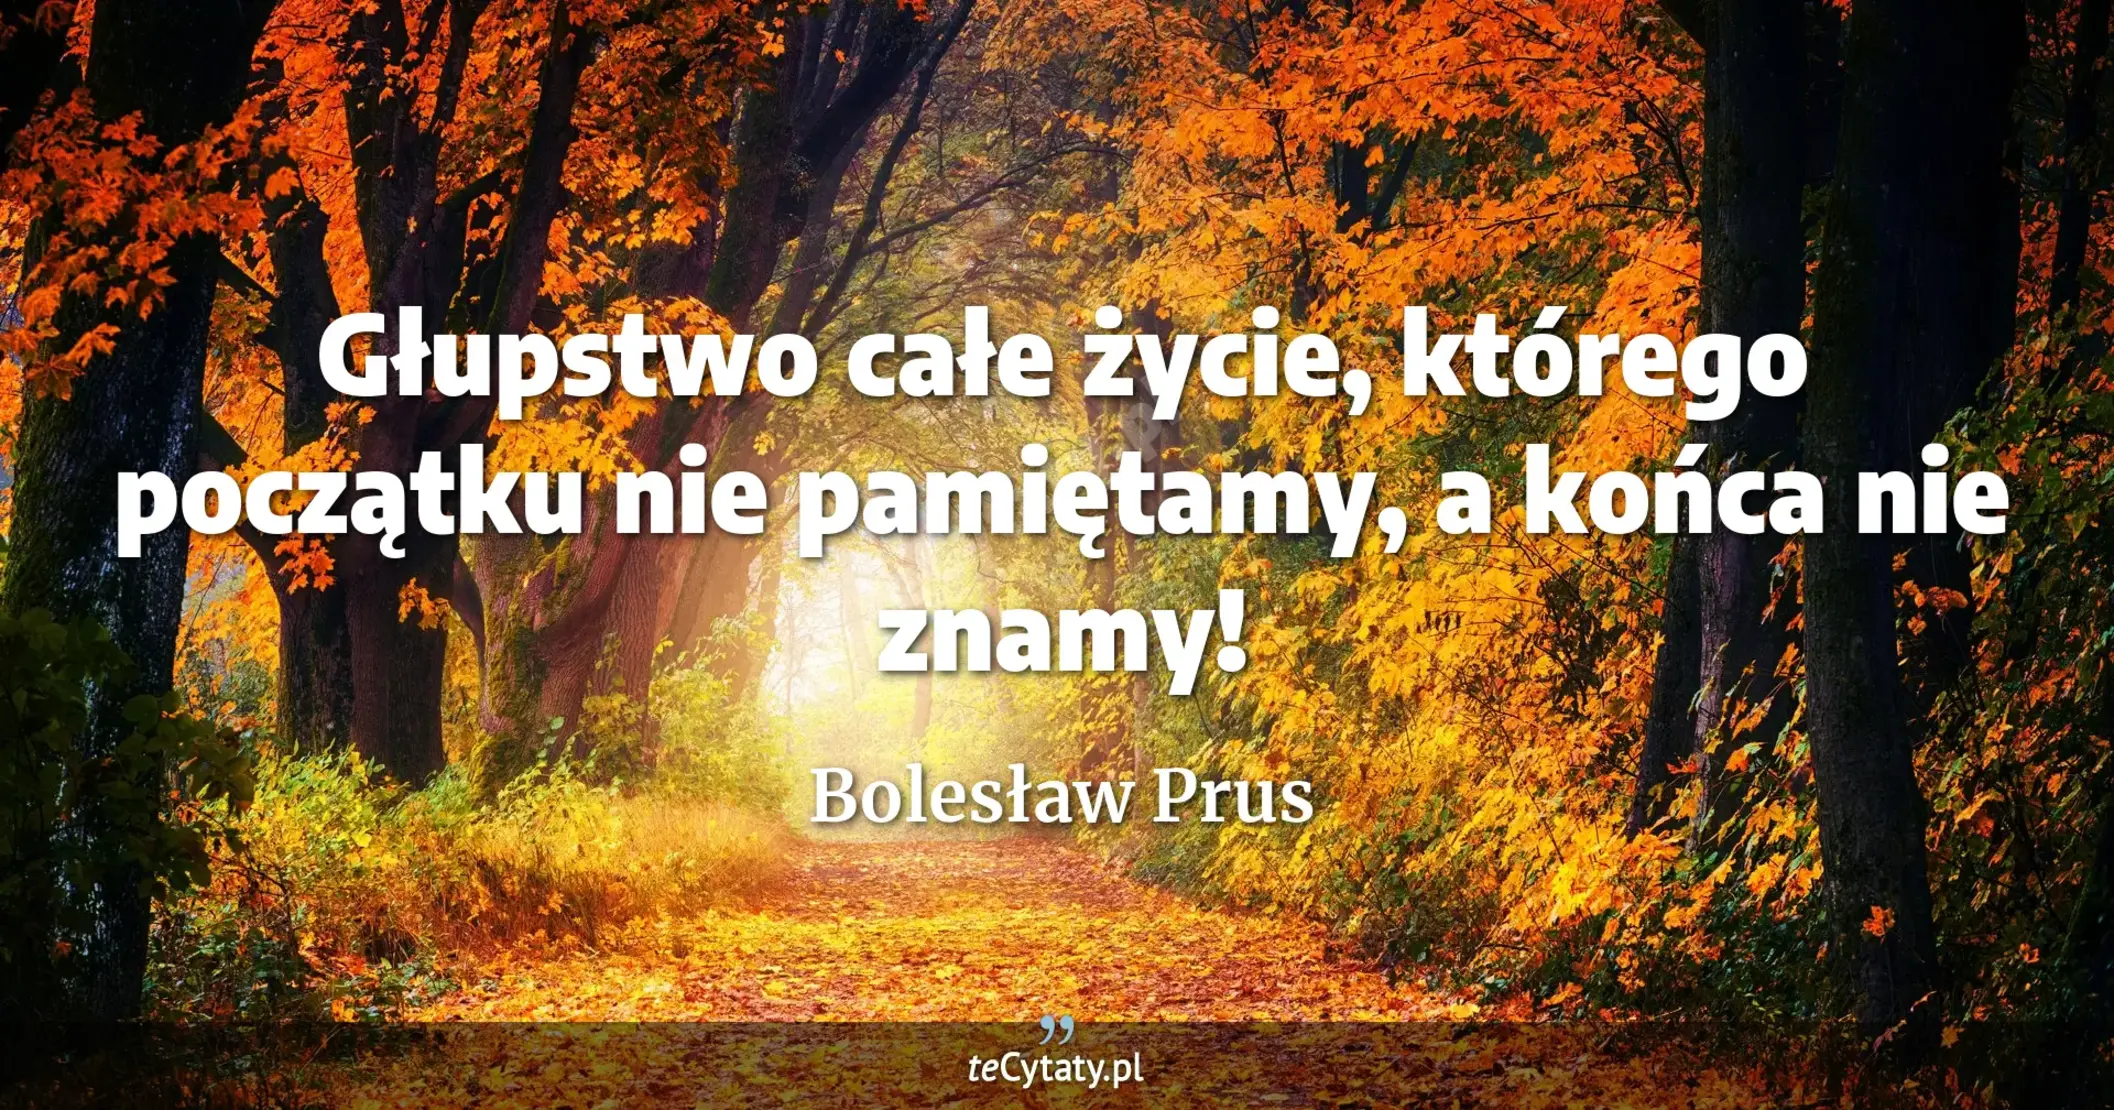 Głupstwo całe życie, którego początku nie pamiętamy, a końca nie znamy! - Bolesław Prus